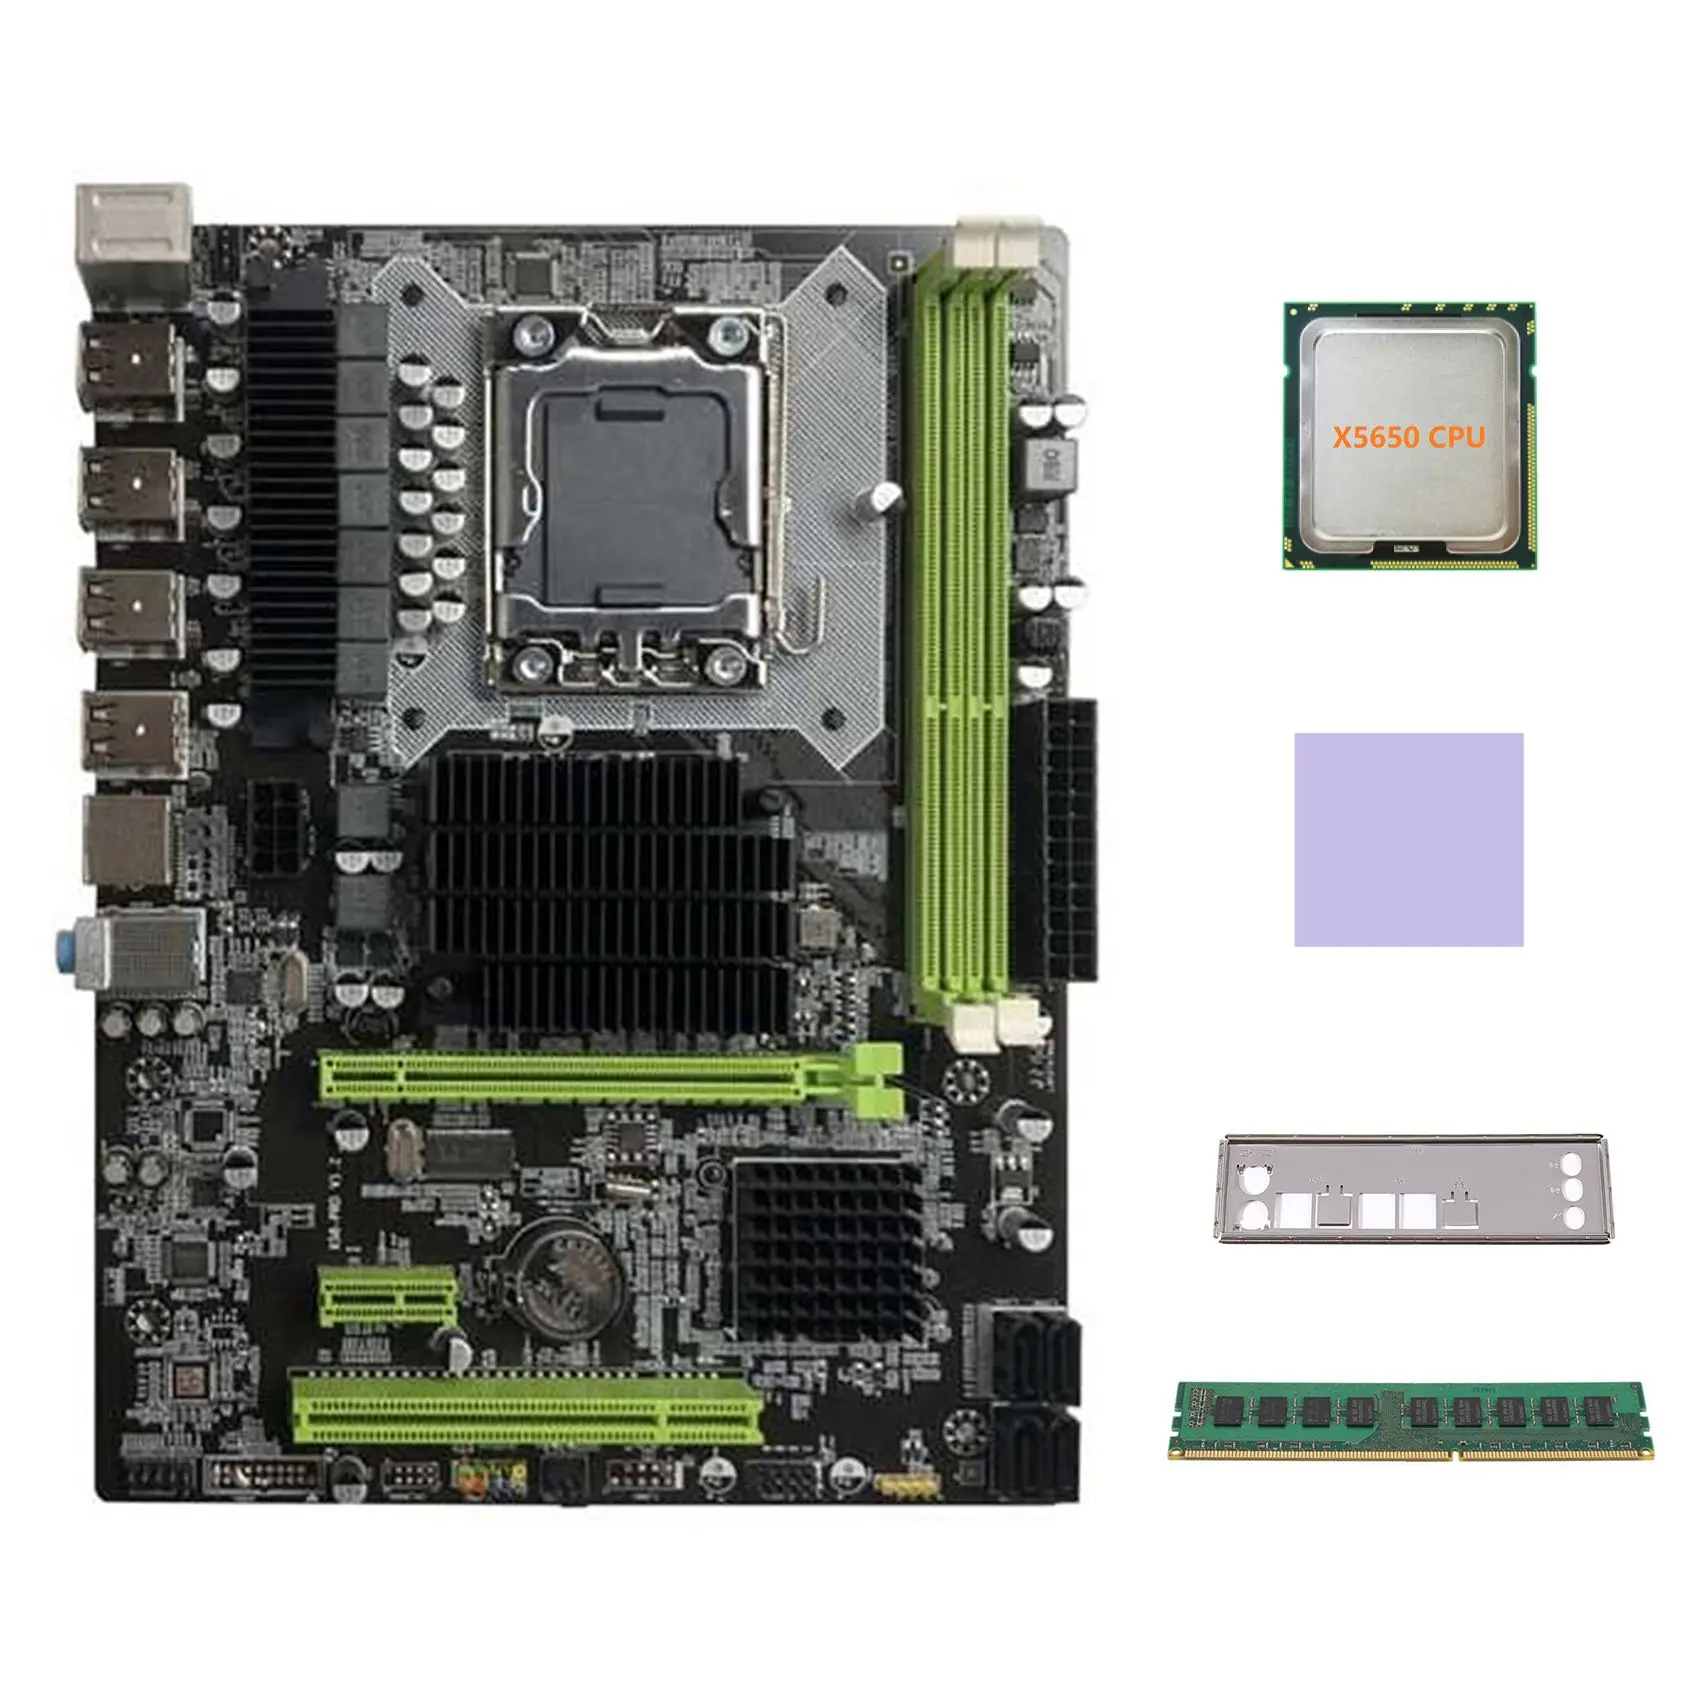 

Материнская плата X58 LGA1366, компьютерная материнская плата с поддержкой RX, графическая карта с процессором X5650 + DDR3 4 Гб 1066 МГц ОЗУ + термоподушка